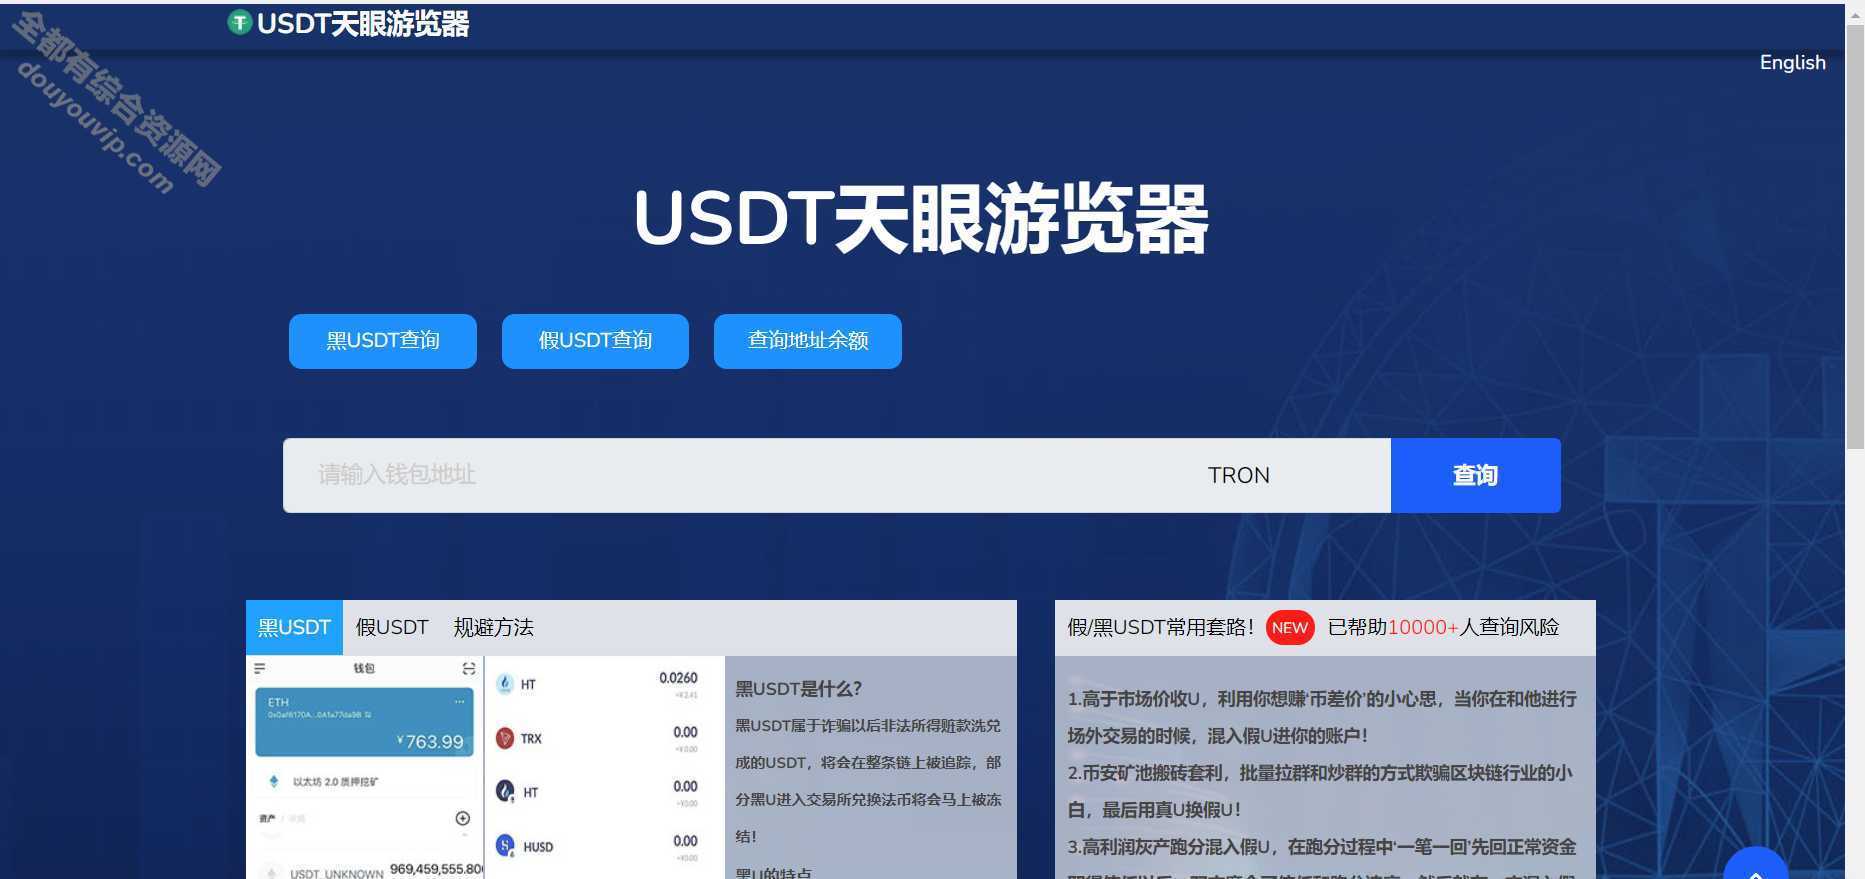 一款3月更新盗u 当地化接口 新增USDT天眼查临时只做TRC3228 作者:逐日更新 帖子ID:314 域名